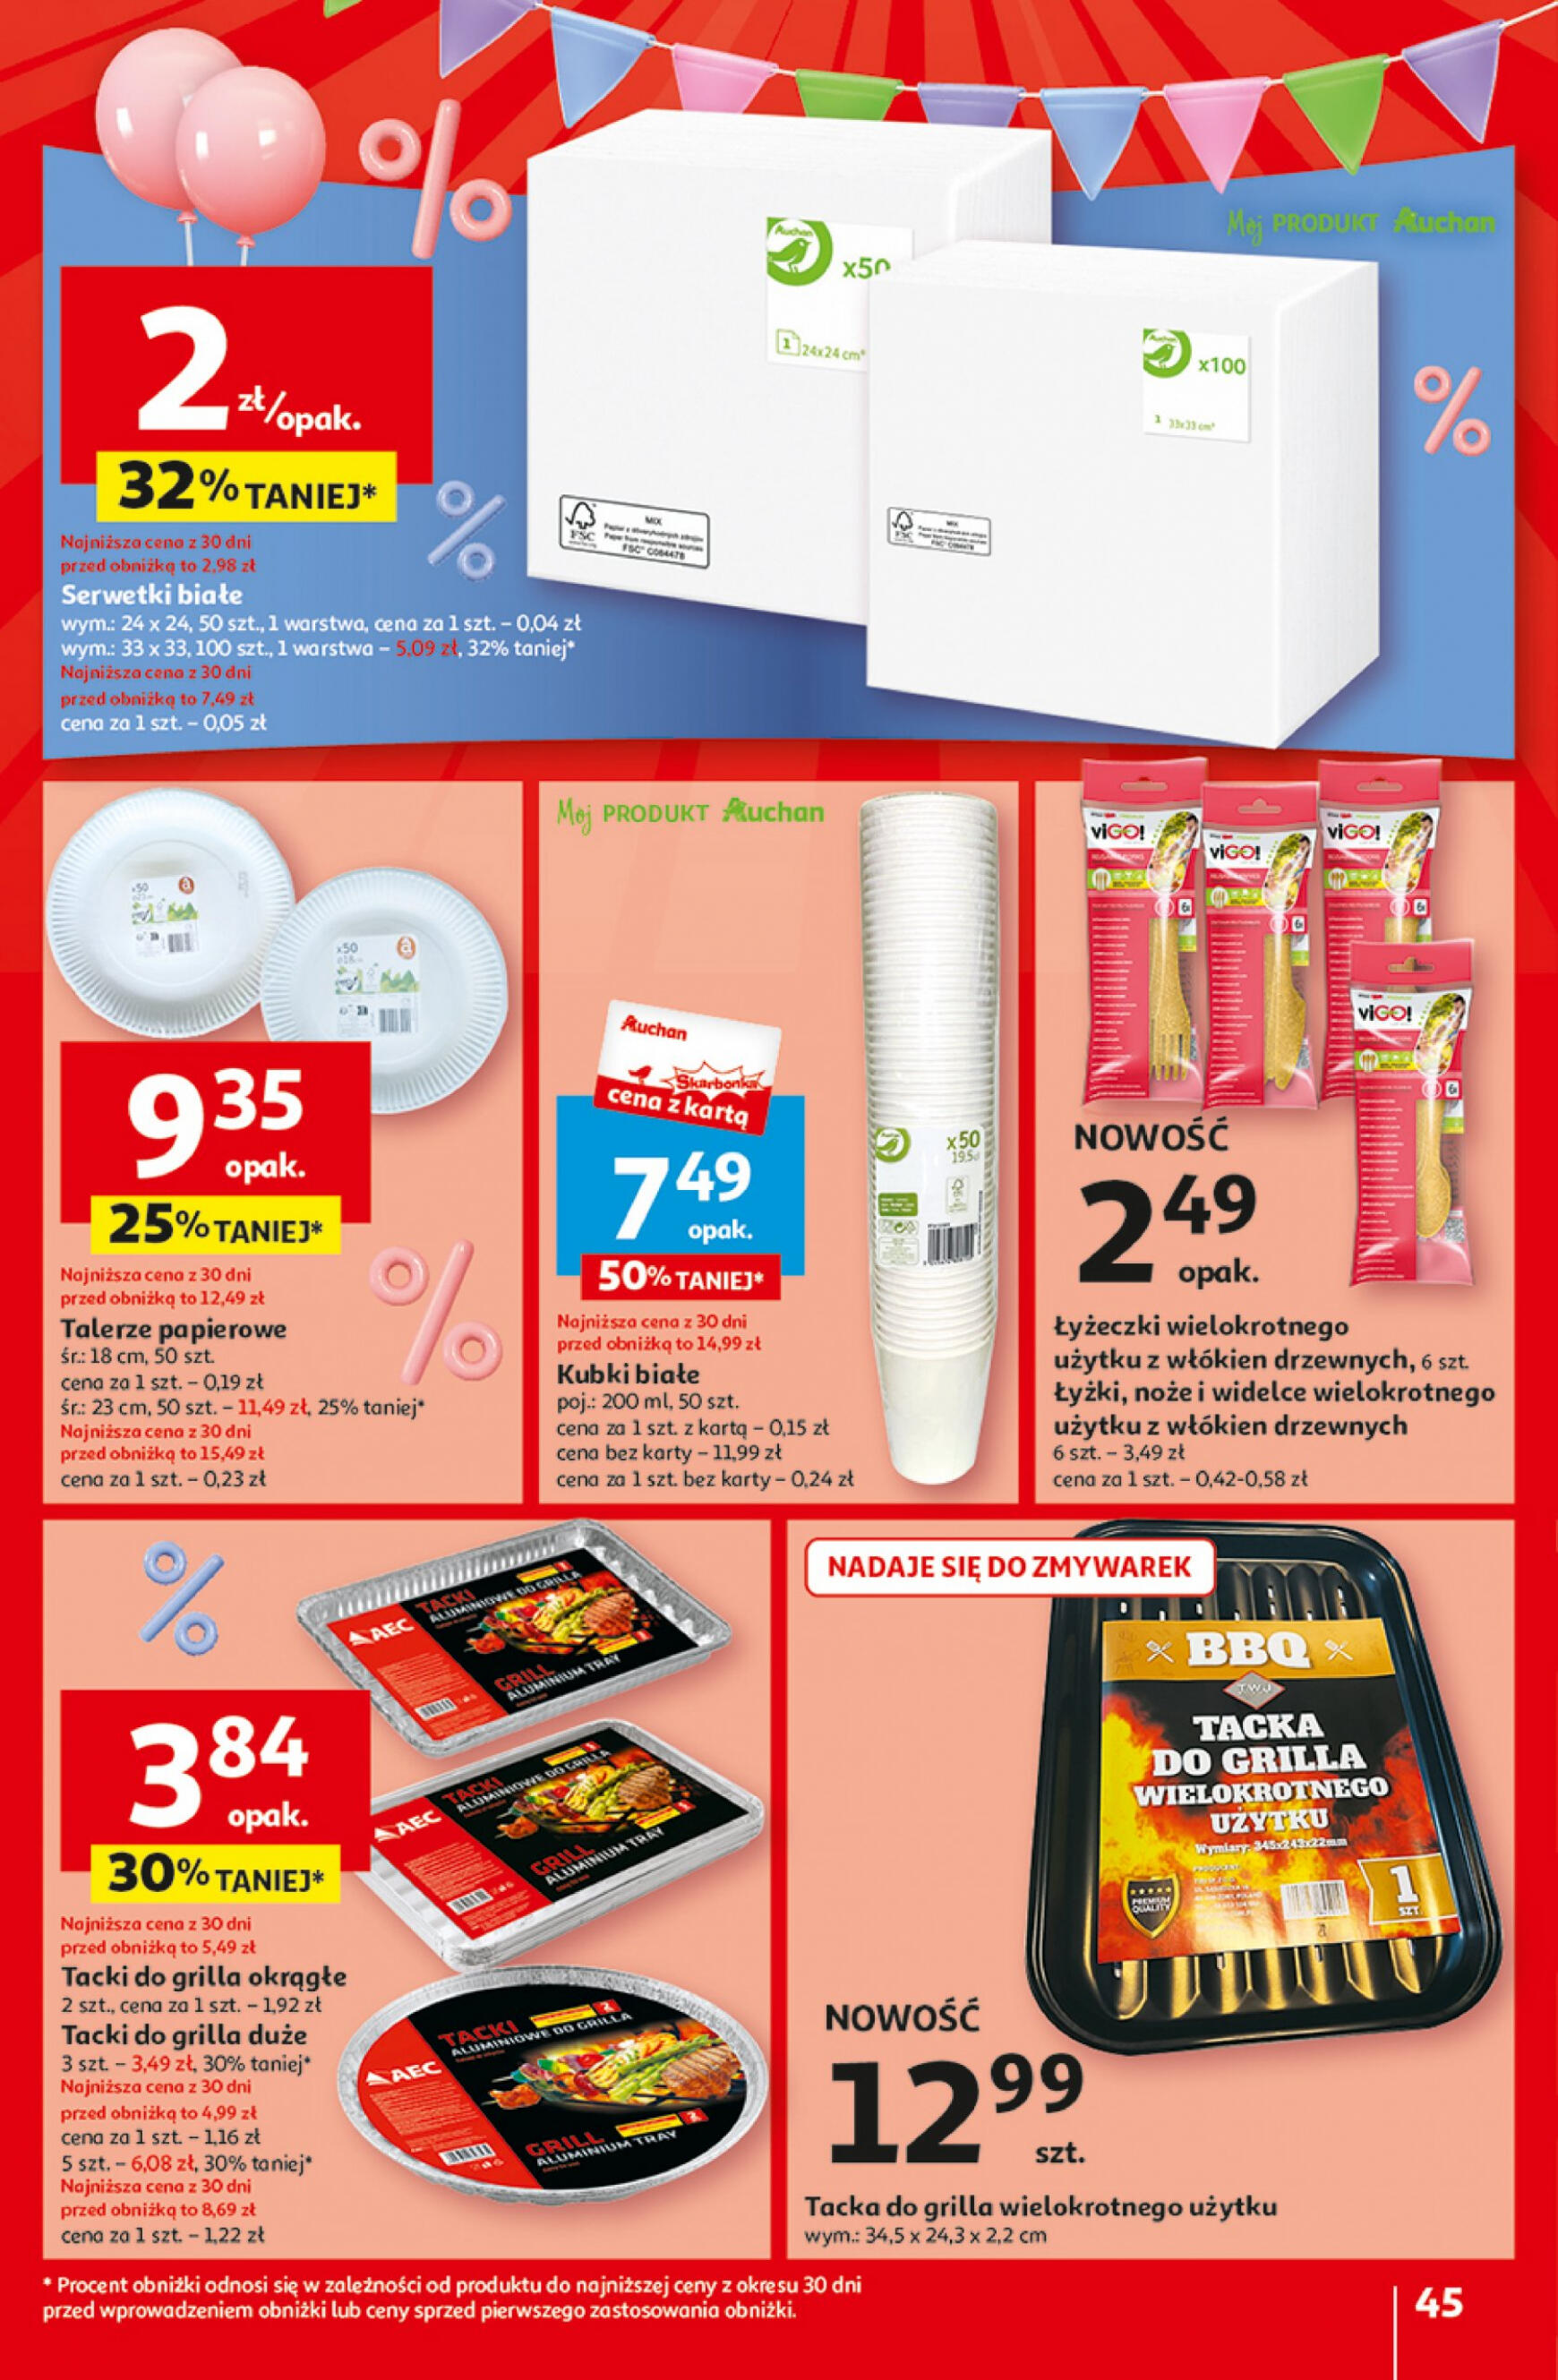 auchan - Hipermarket Auchan - Gazetka Jeszcze taniej na urodziny gazetka aktualna ważna od 25.04. - 30.04. - page: 45